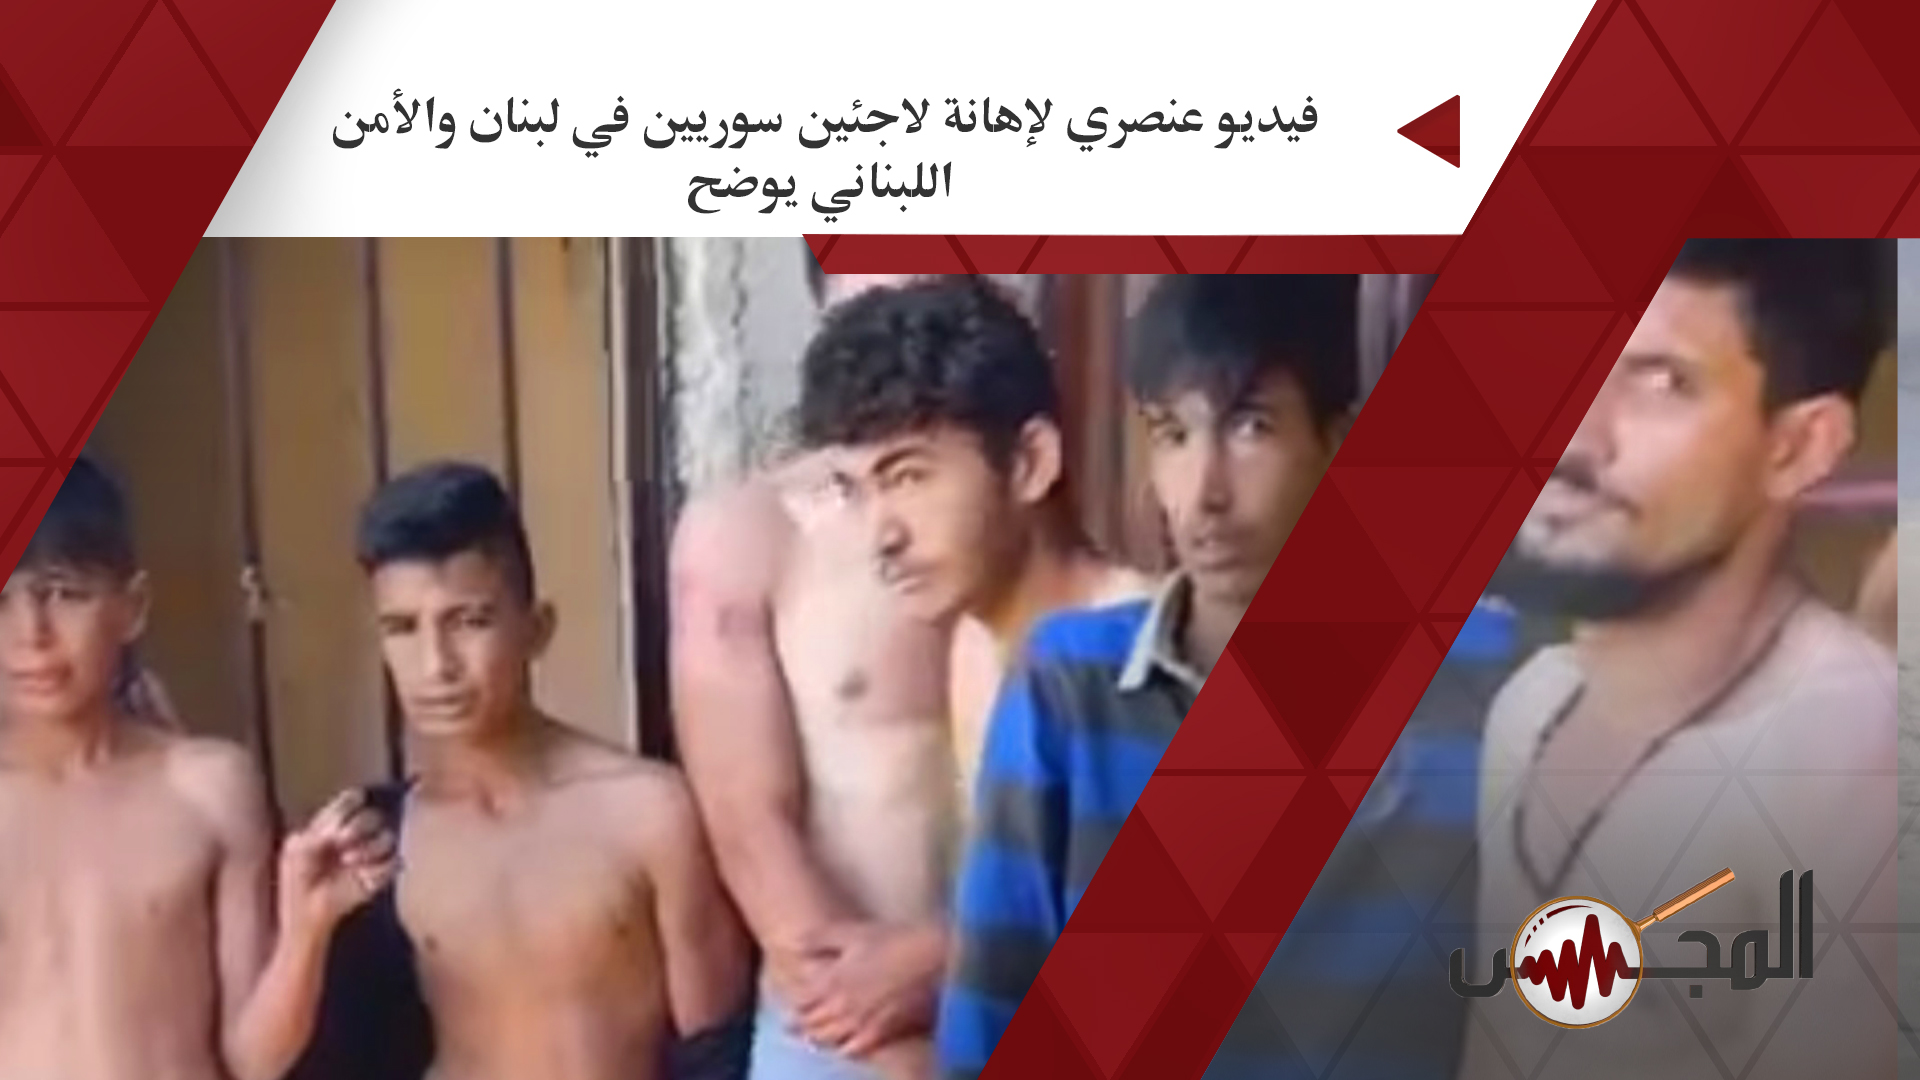 فيديو عنصري لإهانة لاجئين سوريين في لبنان والأمن اللبناني يوضح